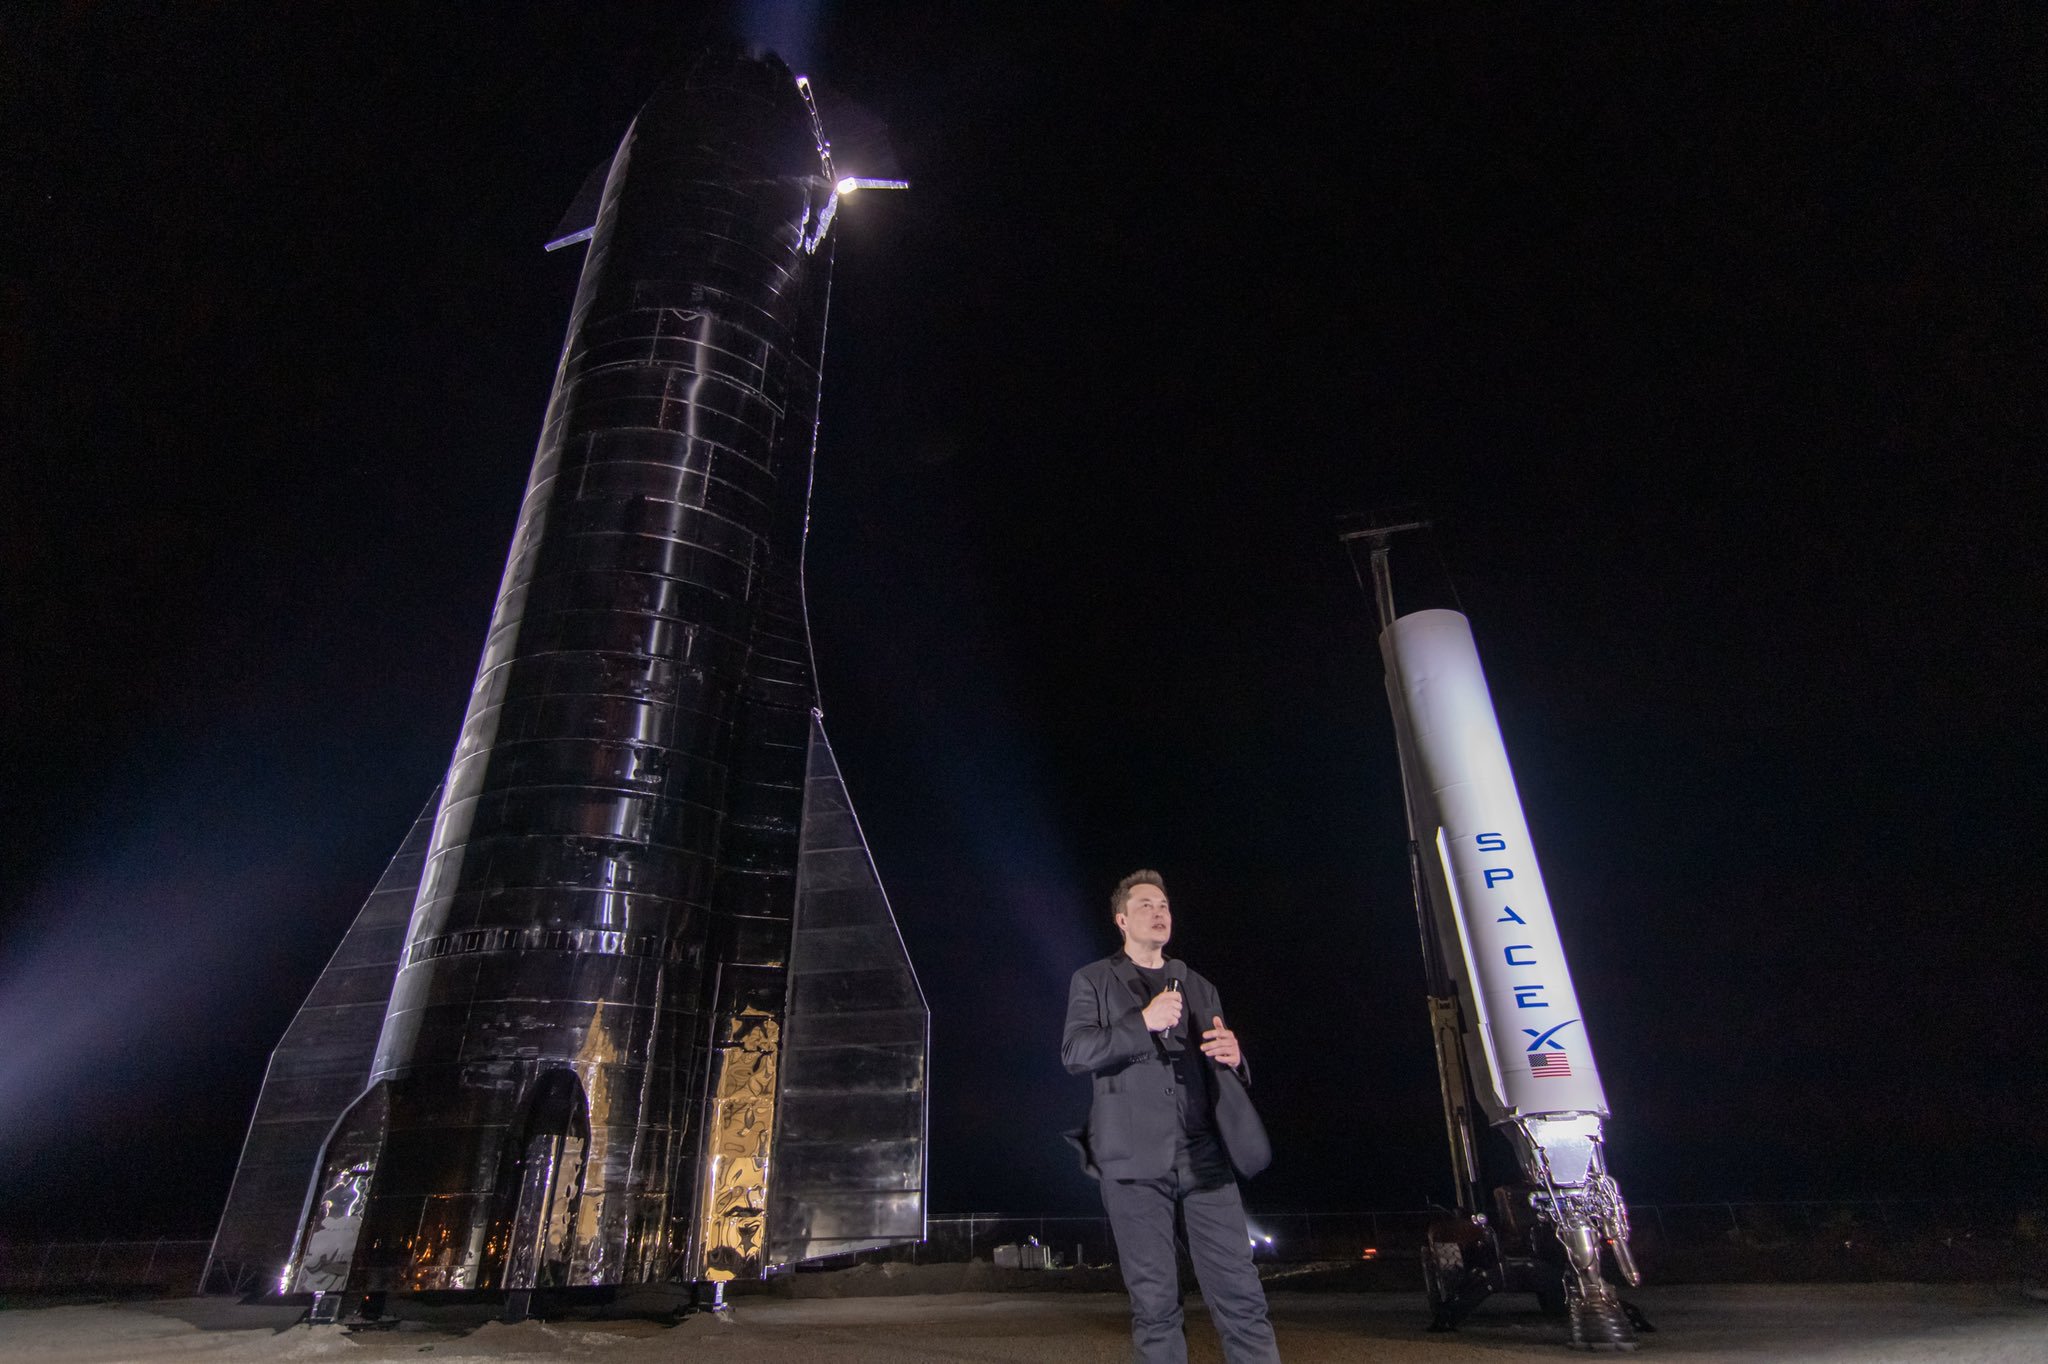 [全程直播] SpaceX将在今晚9点对星舰飞船进行首次综合飞行测试 – 蓝点网